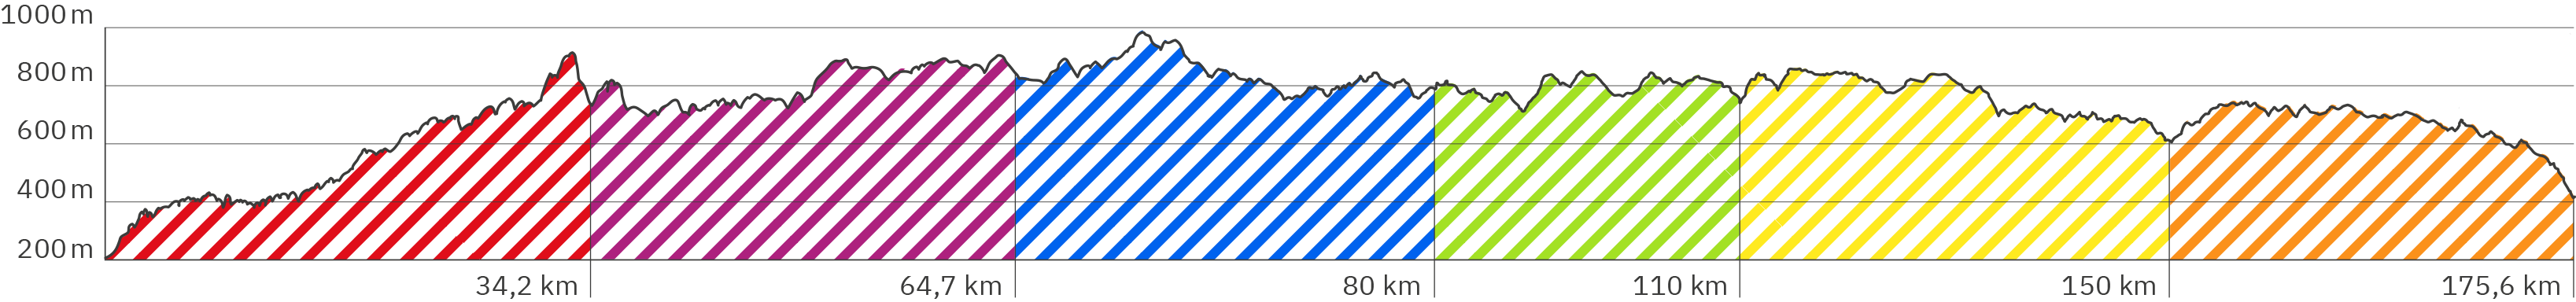 Höhenverlauf des gesamten Rennsteigs – Länge ca. 175,6 km – 6 Etappen (Schraffuren Rot, Lila, Blau, Grün, Gelb und Orange analog zum angezeigten Wegverlauf in der obigen Google Map) – 1. Etappe 34,2 km mit größtem Höhenunterschied bis hoch auf ca. 900 Meter am Ende, 2. Etappe bis km 64,7 mit Steigung bis auf ca. 850 Meter am Ende, 3. Etappe bis km 80,4 mit steilem Aufstieg zu Beginn auf ca. 900 Meter gefolgt von generellem Abstieg 800 Höhenmetern herum, 4. Etappe bis km 110,5 mit kurzen steilen Auf- und Abstiegen um 800 Höhenmetern herum, 5. Etappe bis km 150 abwärts tendierend auf ca. 600 Höhenmeter und 6. Etappe bis km 175,6 nach kurzem Aufstieg zu Beginn, generell leicht Absteigend und steilerem Abstieg am Ende runter auf ca. 400 Meter